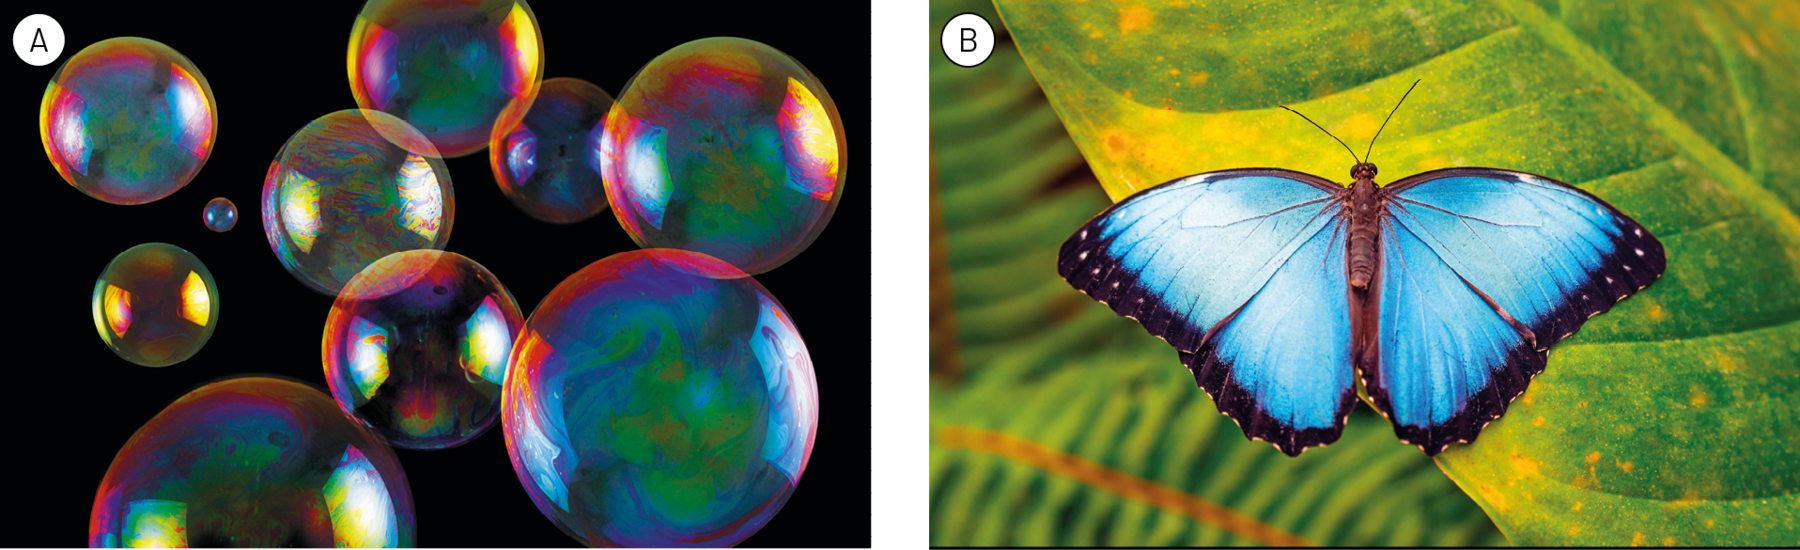 Fotografia A. Bolas de sabão com a superfície multicolorida. Fotografia B. Borboleta de asas azuis e bordas pretas sobre uma folha.